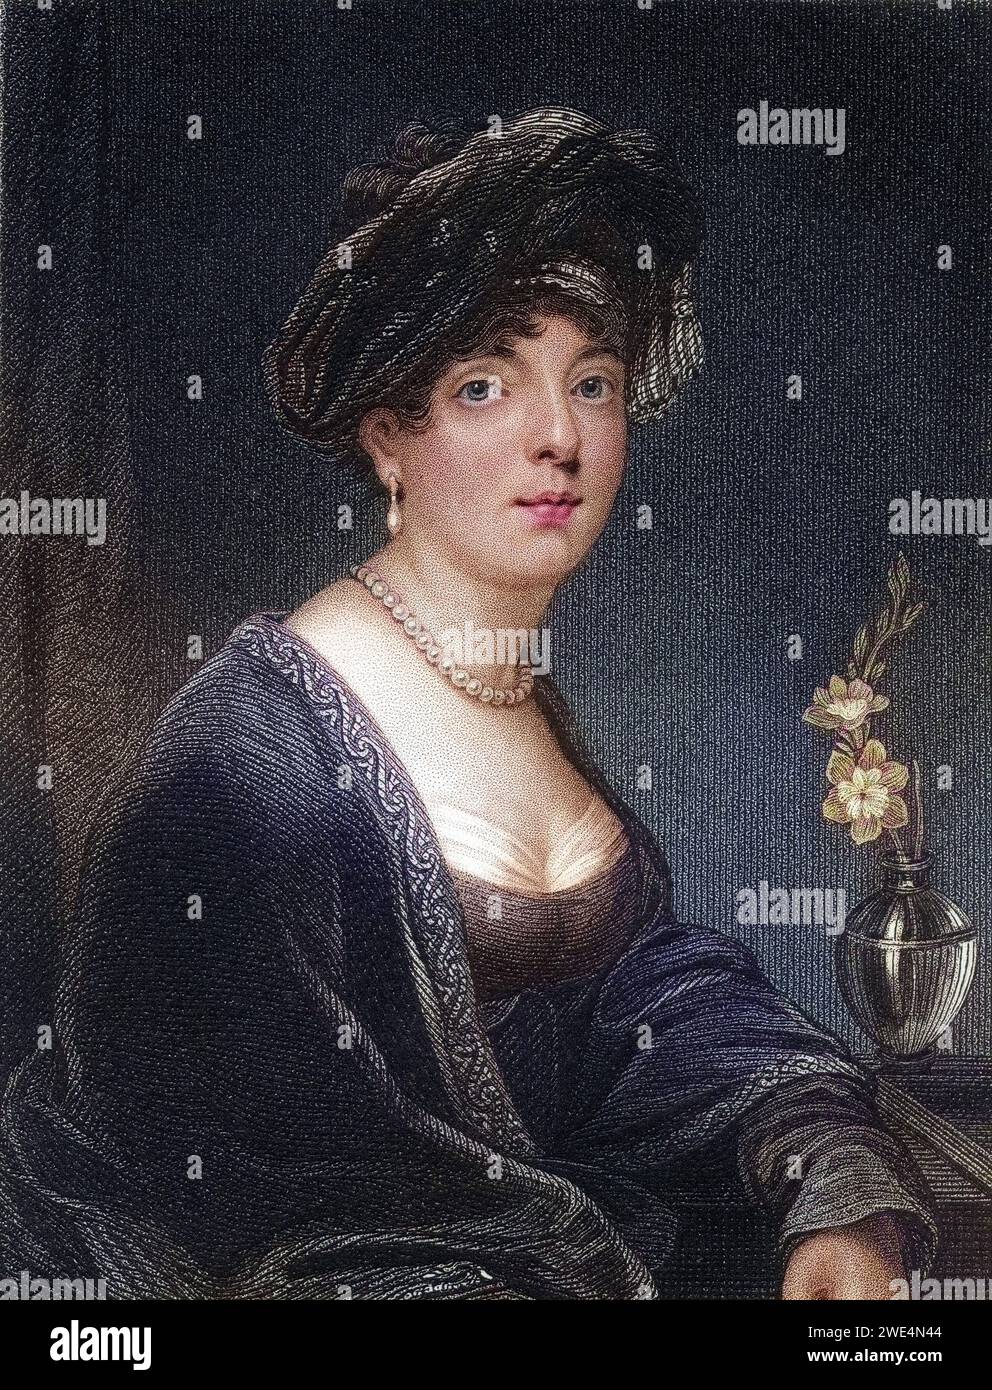 Elizabeth Leveson Gower Duchess und 19. Gräfin von Sutherland 1765 bis 1839 schottische Peeress Künstler und Reformer, Historisch, digital restaurierte Reproduktion von einer Vorlage aus dem 19. Jahrhundert, Datum nicht angegeben Stockfoto